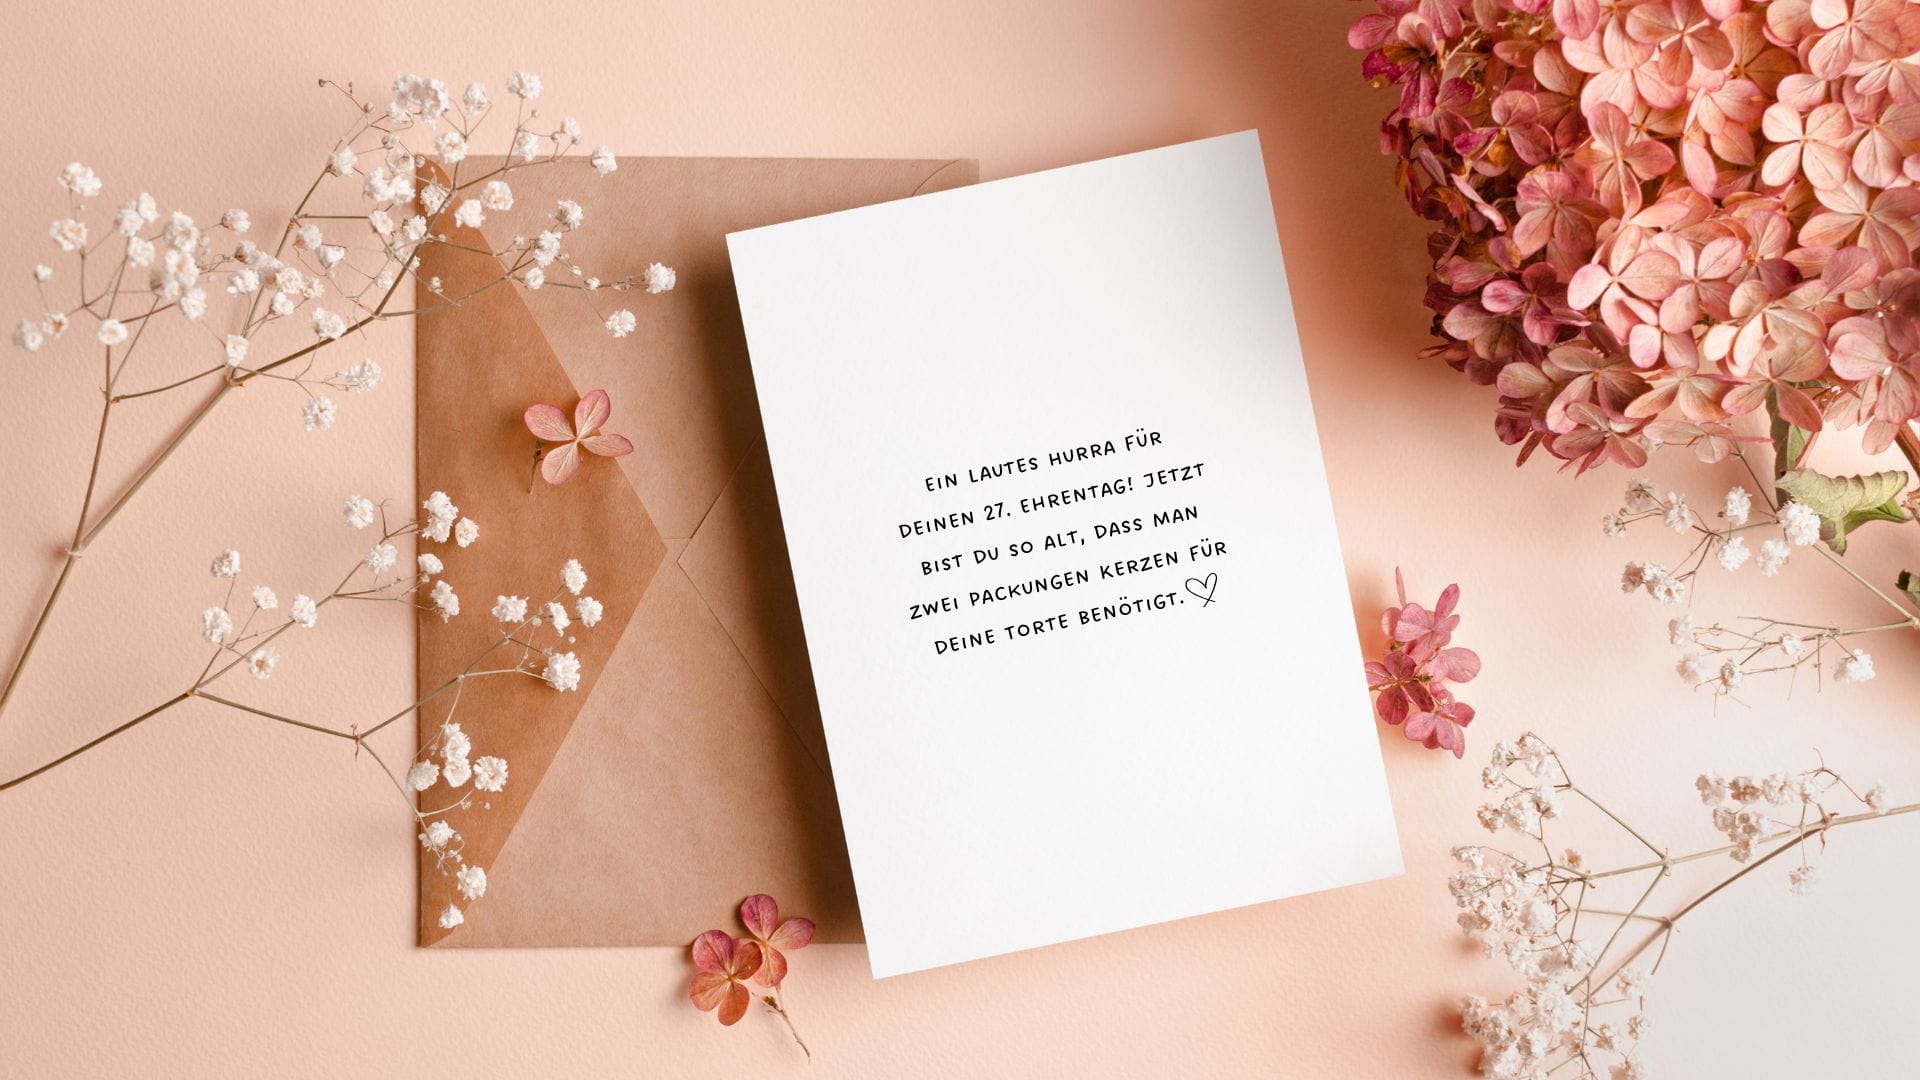 Blumenschmuck und eine Karte mit einem lustigen Wunsch zum 27. Geburtstag